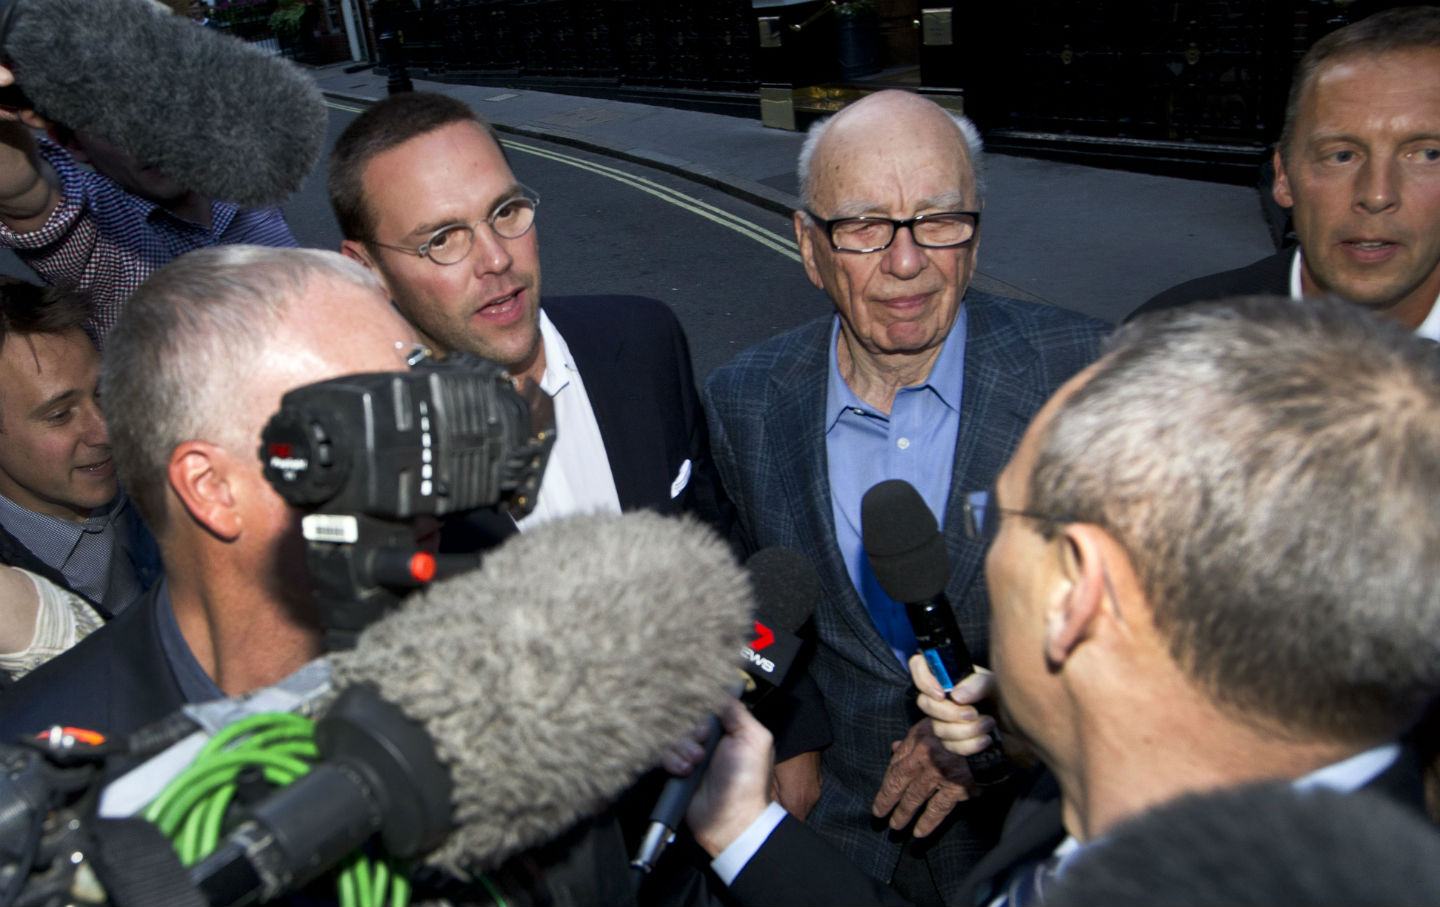 Rupert and James Murdoch